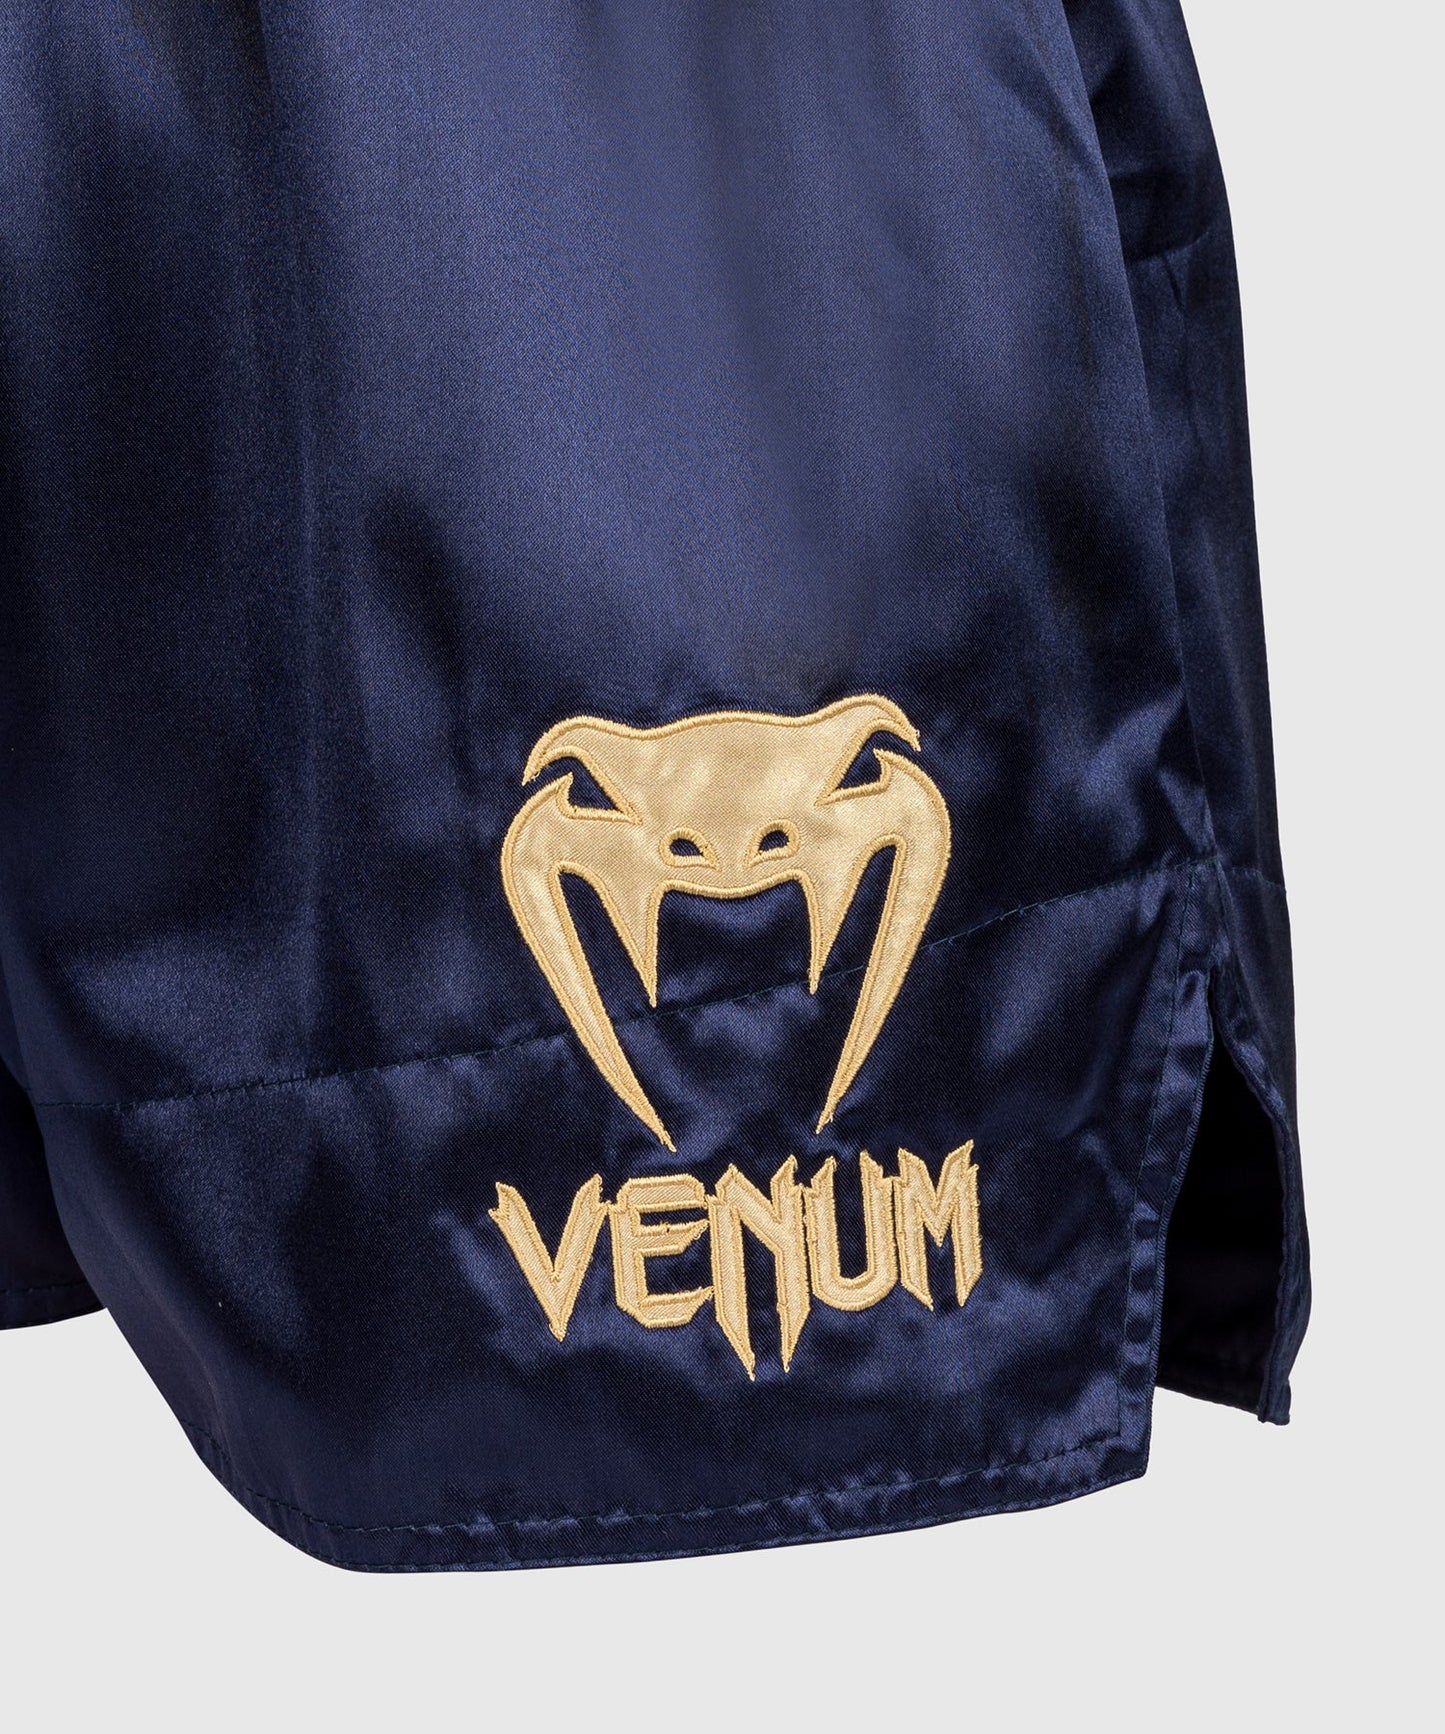 Venum Classic Pantalones cortos de Muay Thai - Azul marino/Dorado